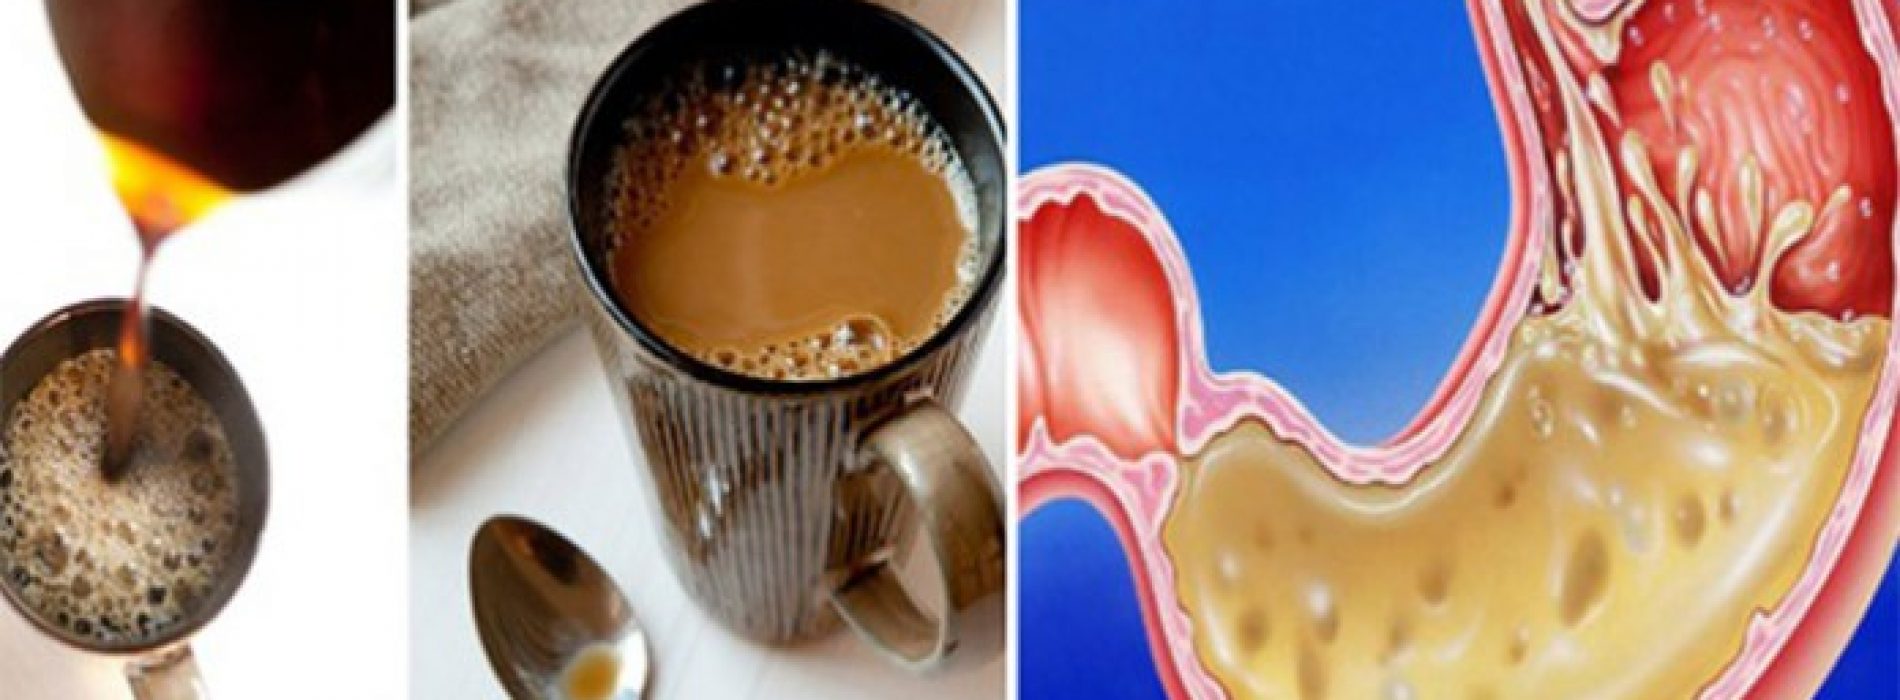 Drink je koffie in de ochtend op een lege maag?